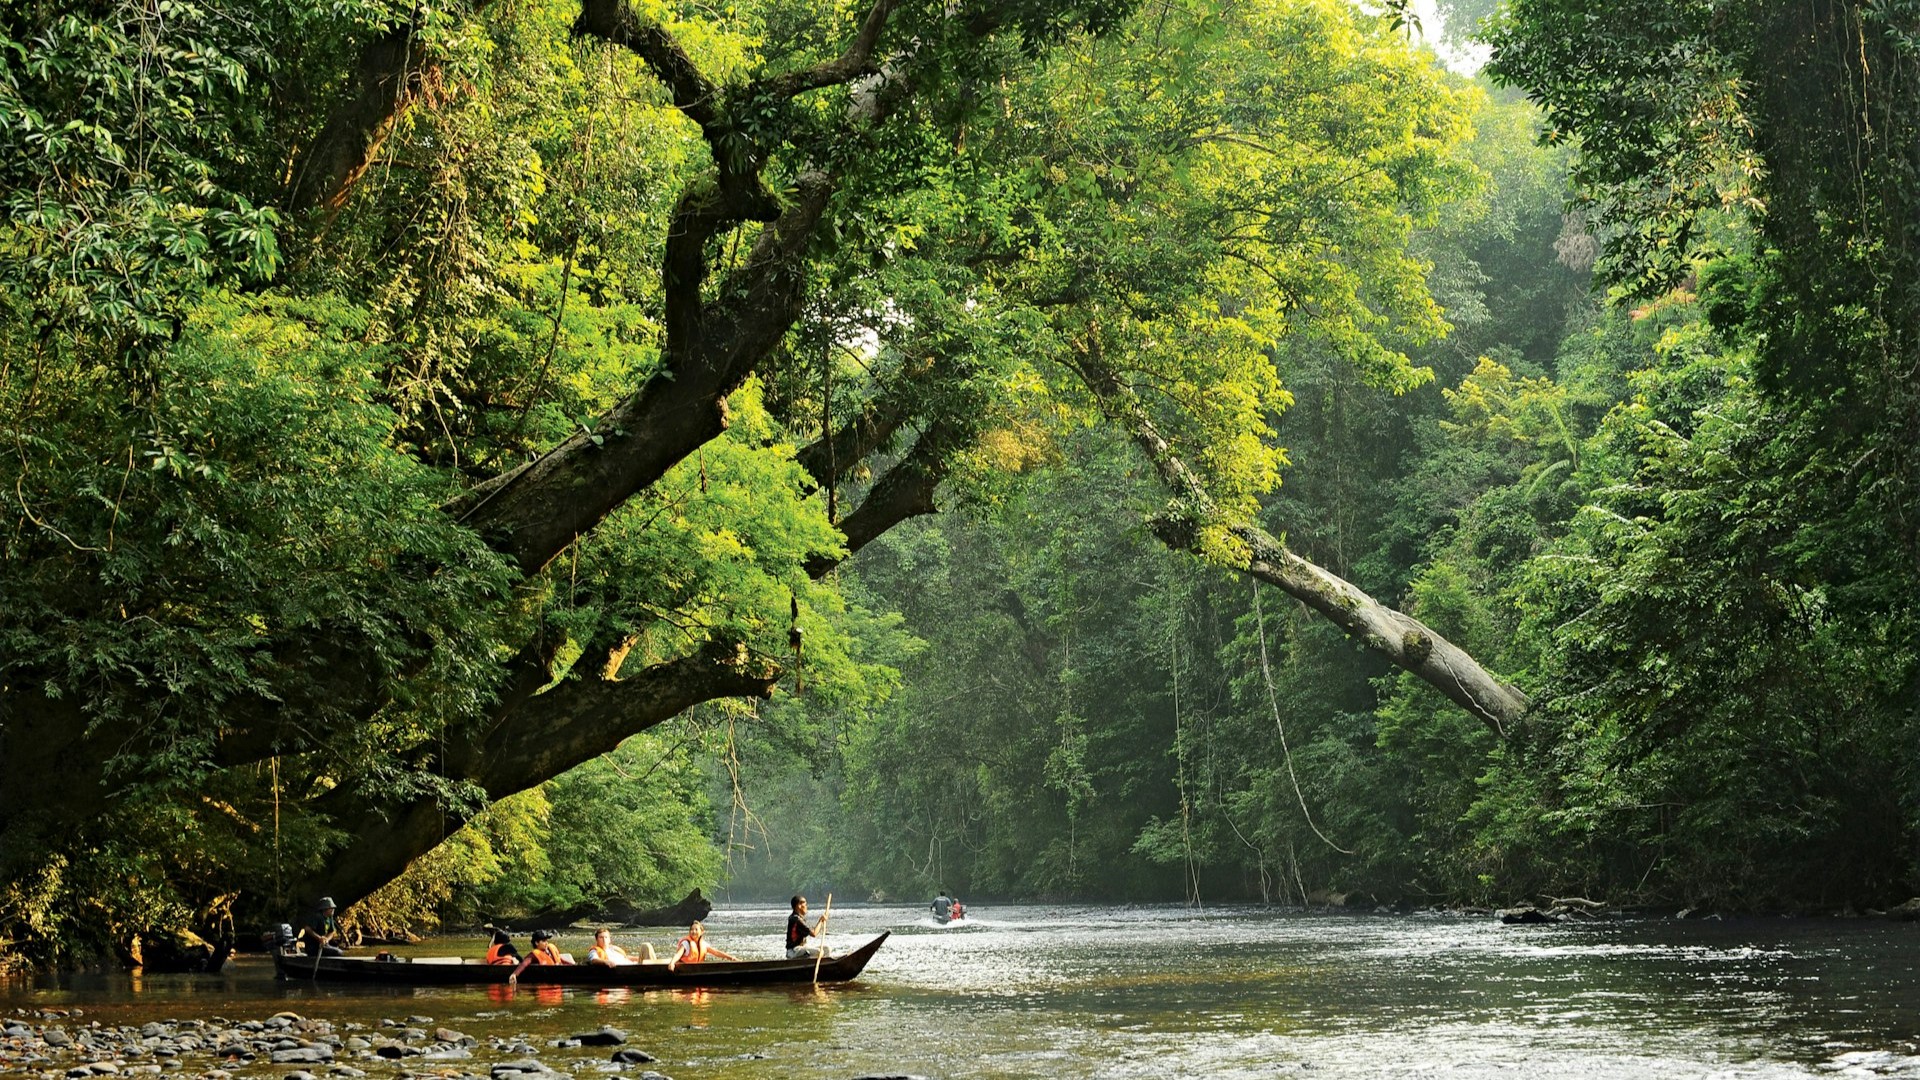 Taman Negara: Discovering Malaysia's Ancient Rainforest